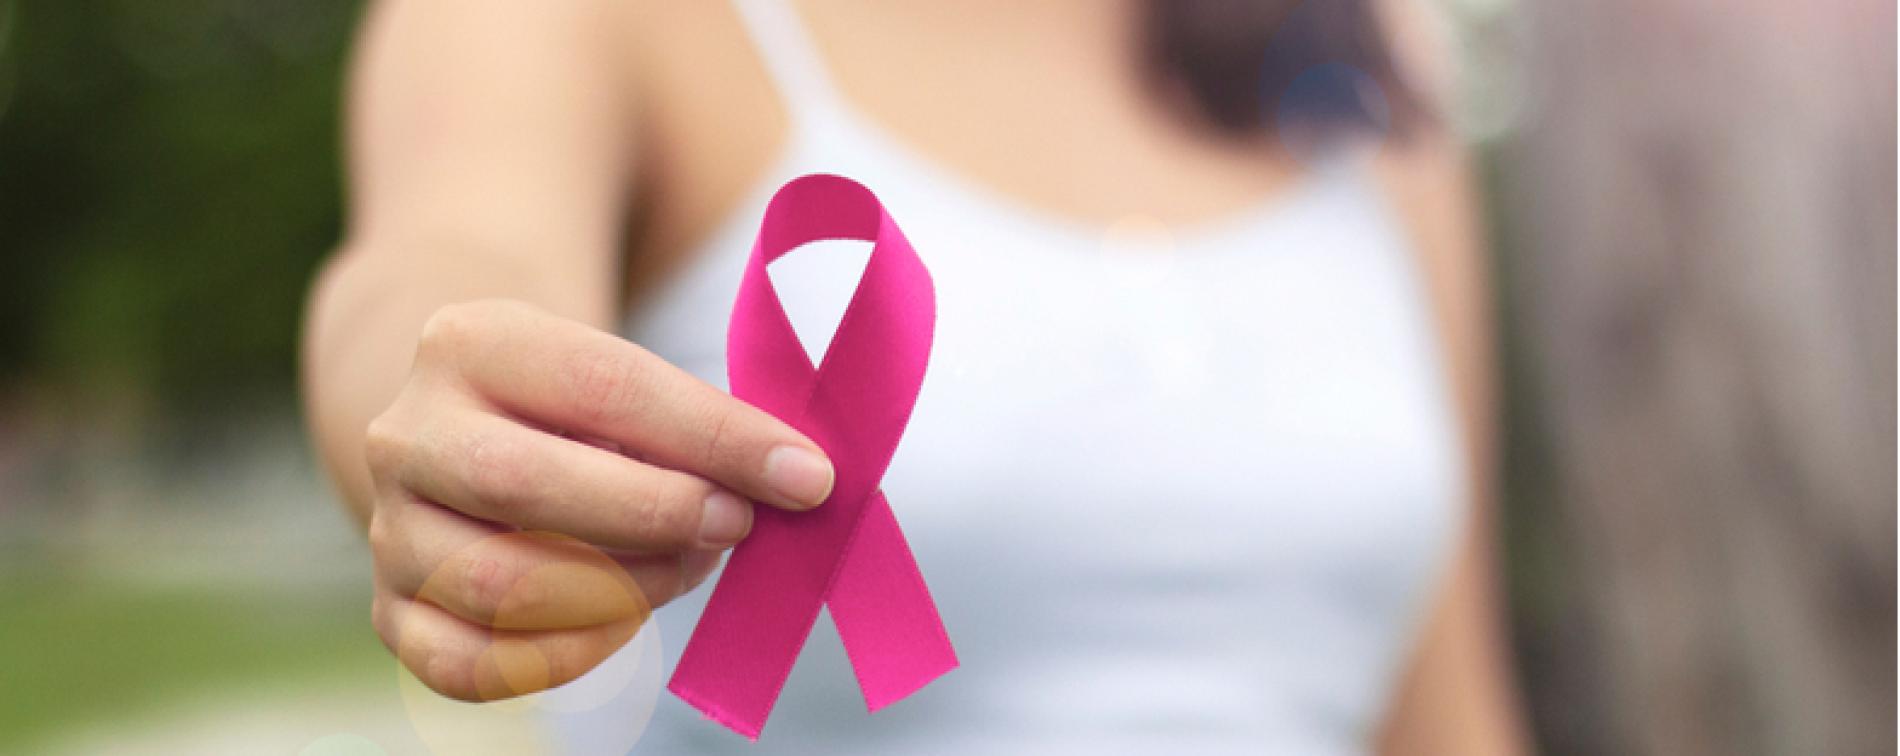 Tumore al seno: con Cigno e Vela controlli e visite per la prevenzione